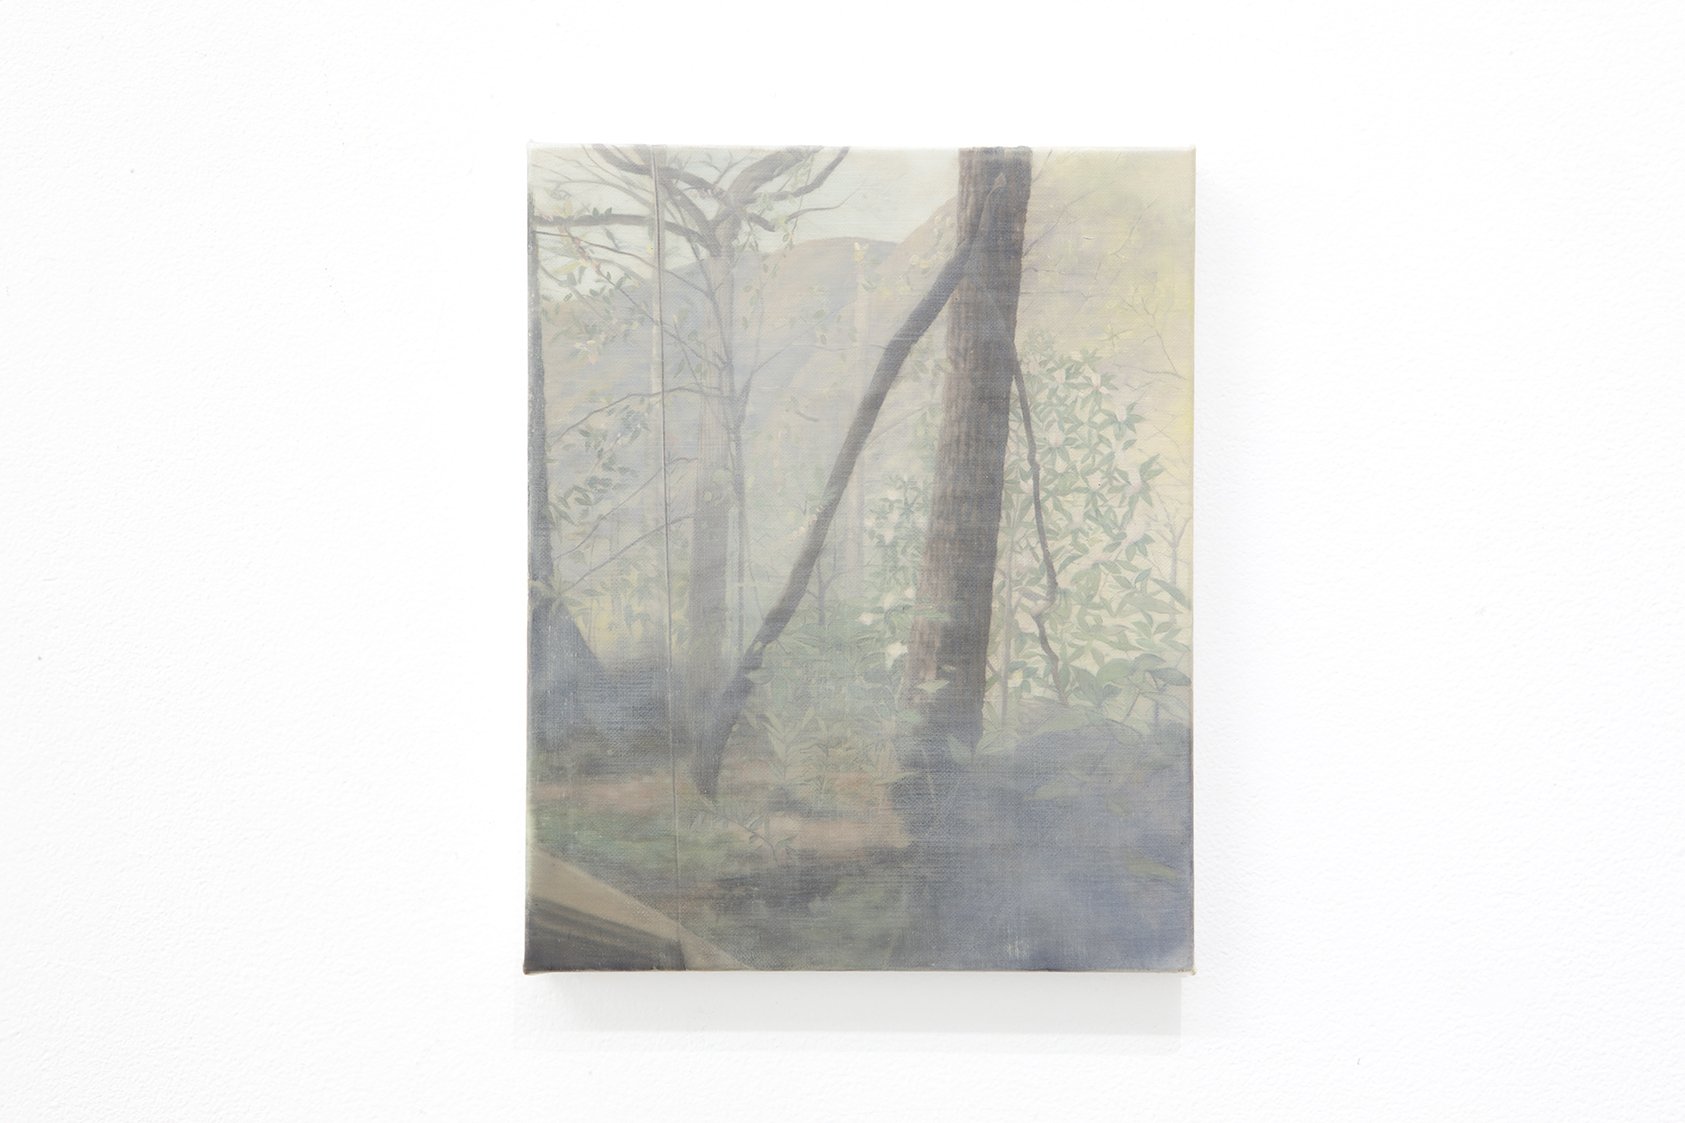   Landscape view #1,  2020, Oil on linen, 8 x 6” 